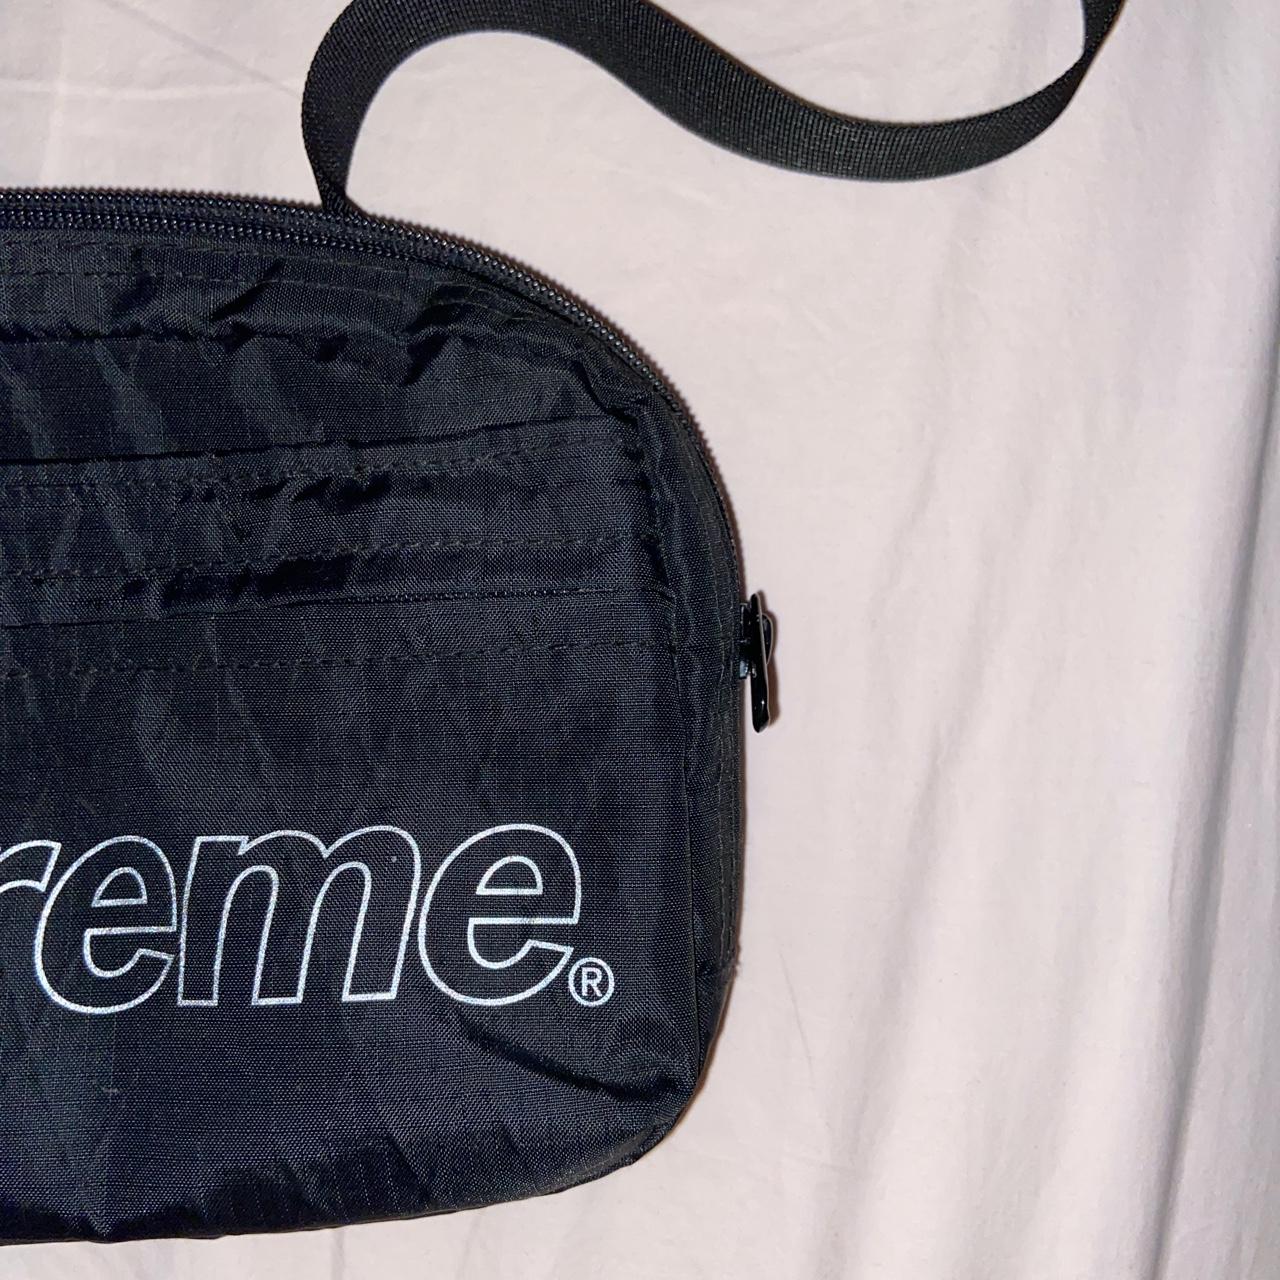 Supreme FW18 Shoulder Bag